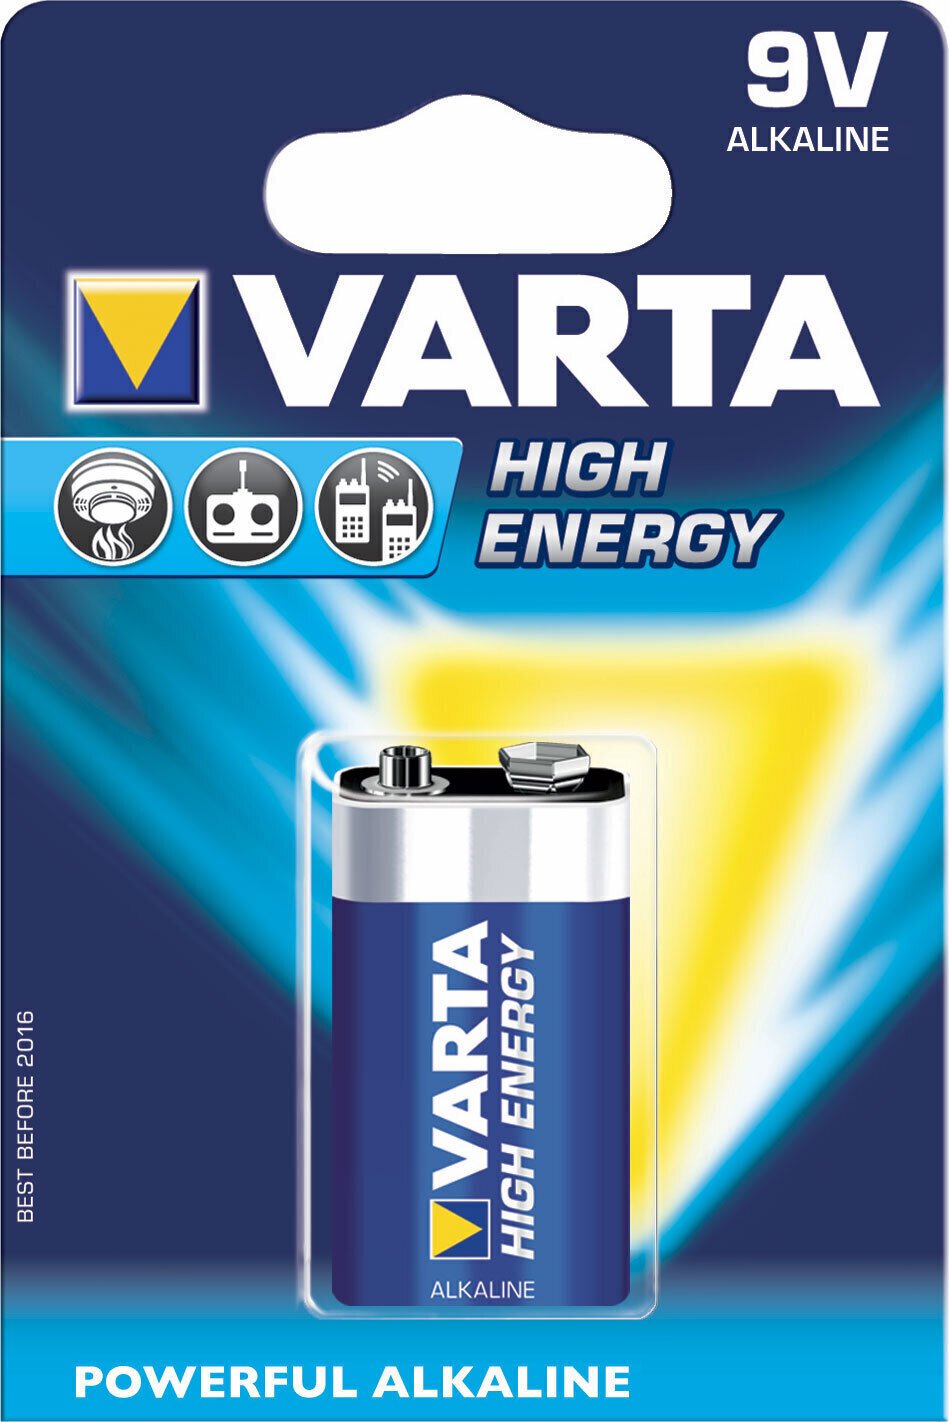 9V Batteri Varta 9V Batteri 6F22 High Energy